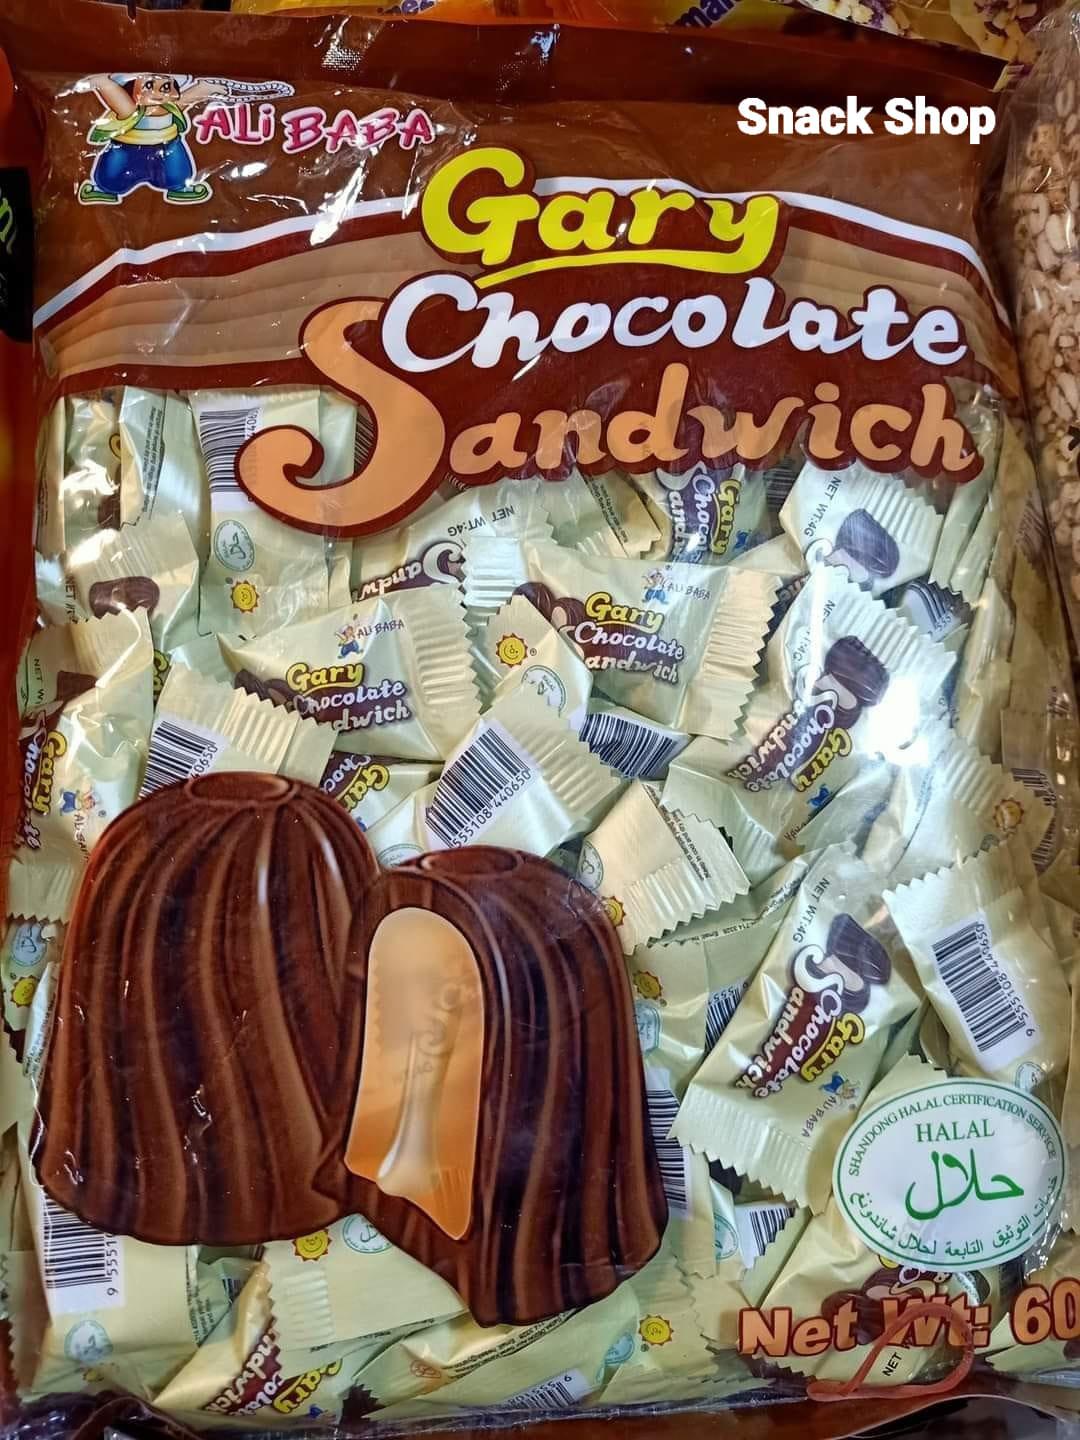 ช็อคโกแลต อาลีบาบา Gary Chocolate Sandwich ช็อคโกแลตแซนวิช จำนวน 1 ถุงบรรจุ 150 ชิ้น สินค้านำเข้า